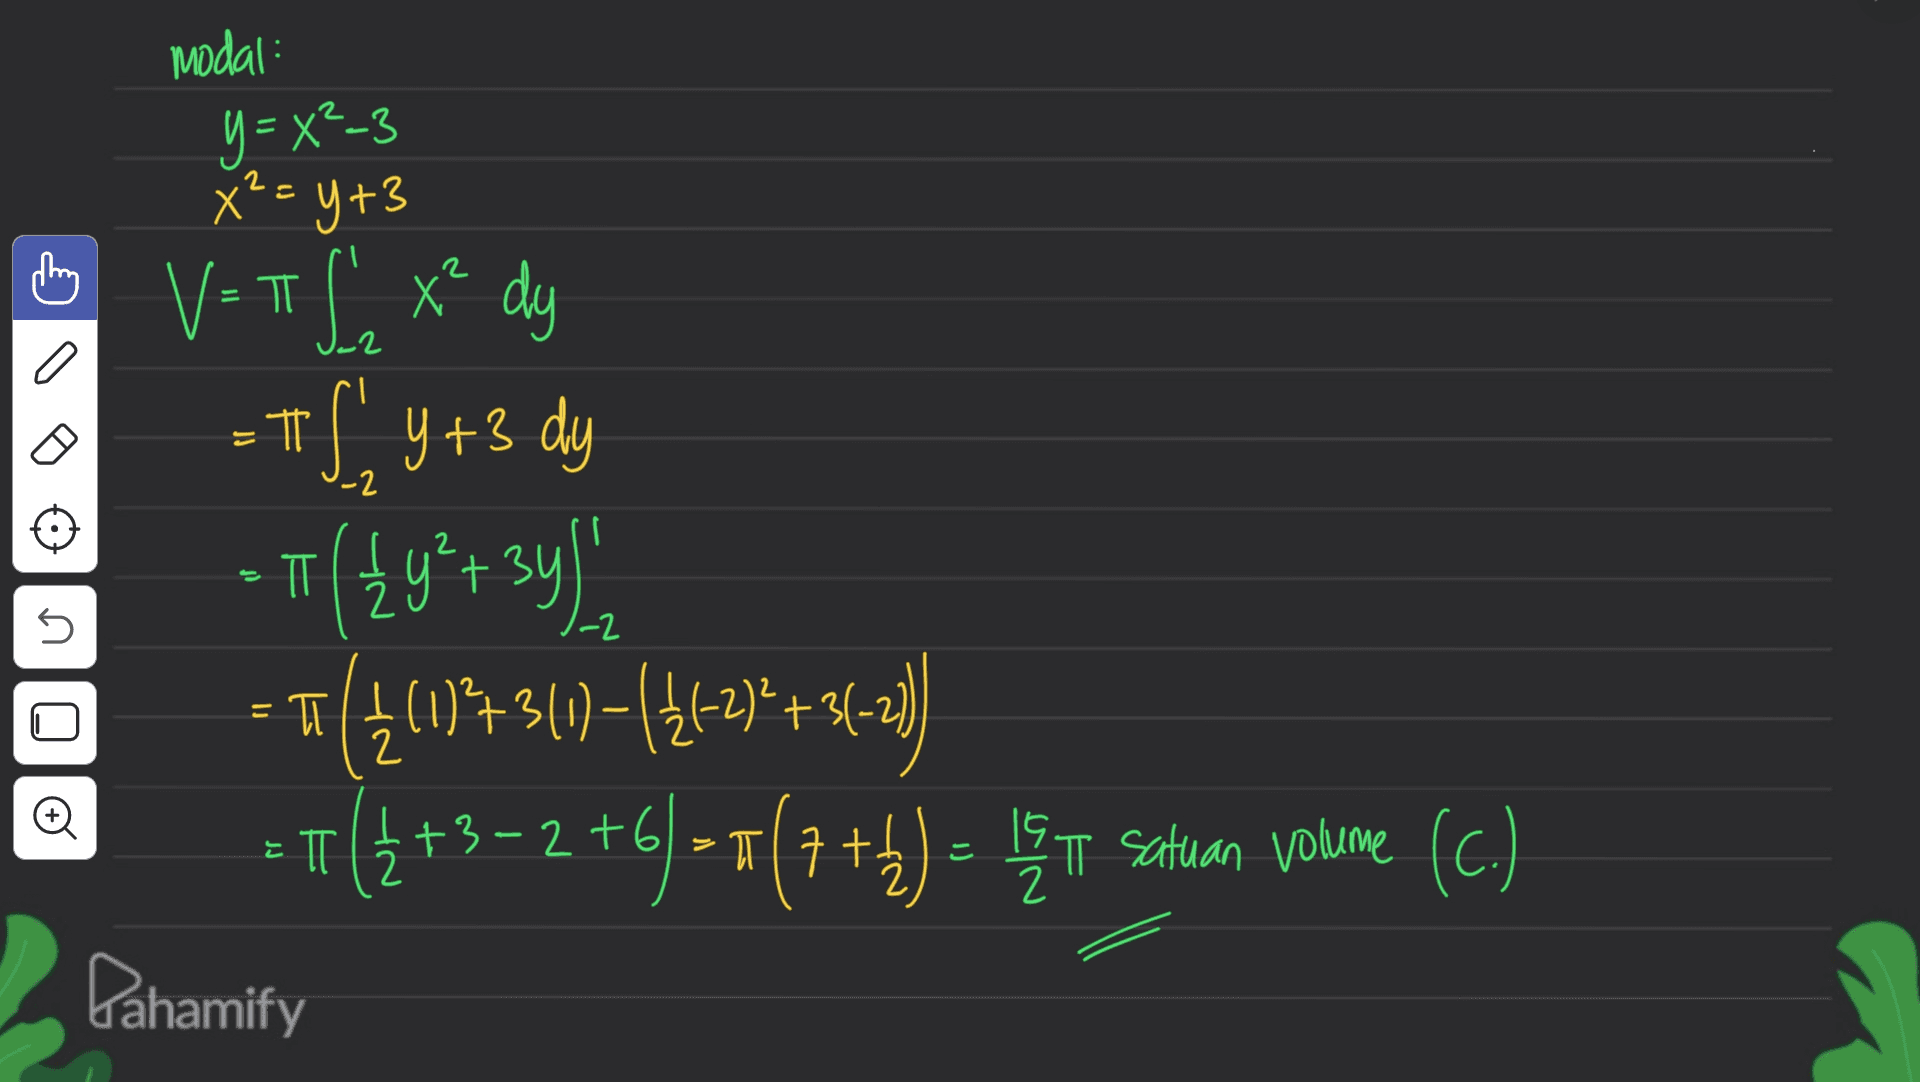 modal: y = x2-3 X²= y +3 = ㅠ t -2 = -2 ㅠ ? + 6 V=TL x² dy = + ( y +3 dy - 11/2y² + 3y) o 540 = T((*242) T(4(173(1)={{{2}+ -T7(+3+2 +6] - *(7 ++ ) = bę u setuan Volume (c.) 2+) I Pahamify n 1-2 +31 2 = II ㅠ E 2 